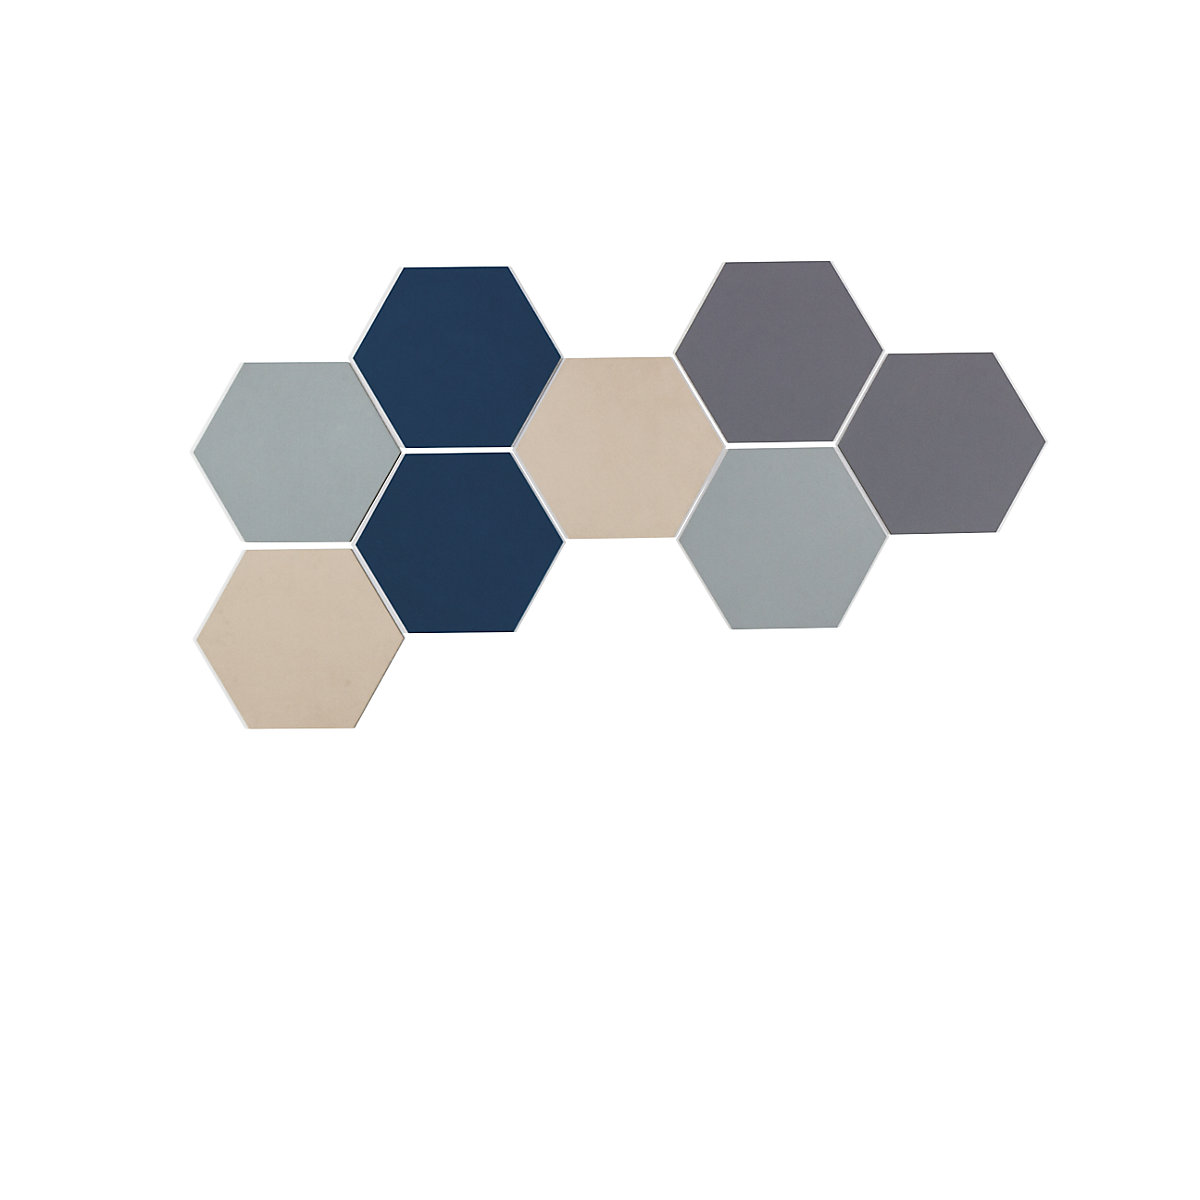 Chameleon – Panou design hexagonal cu prindere cu piuneze (Imagine produs 29)